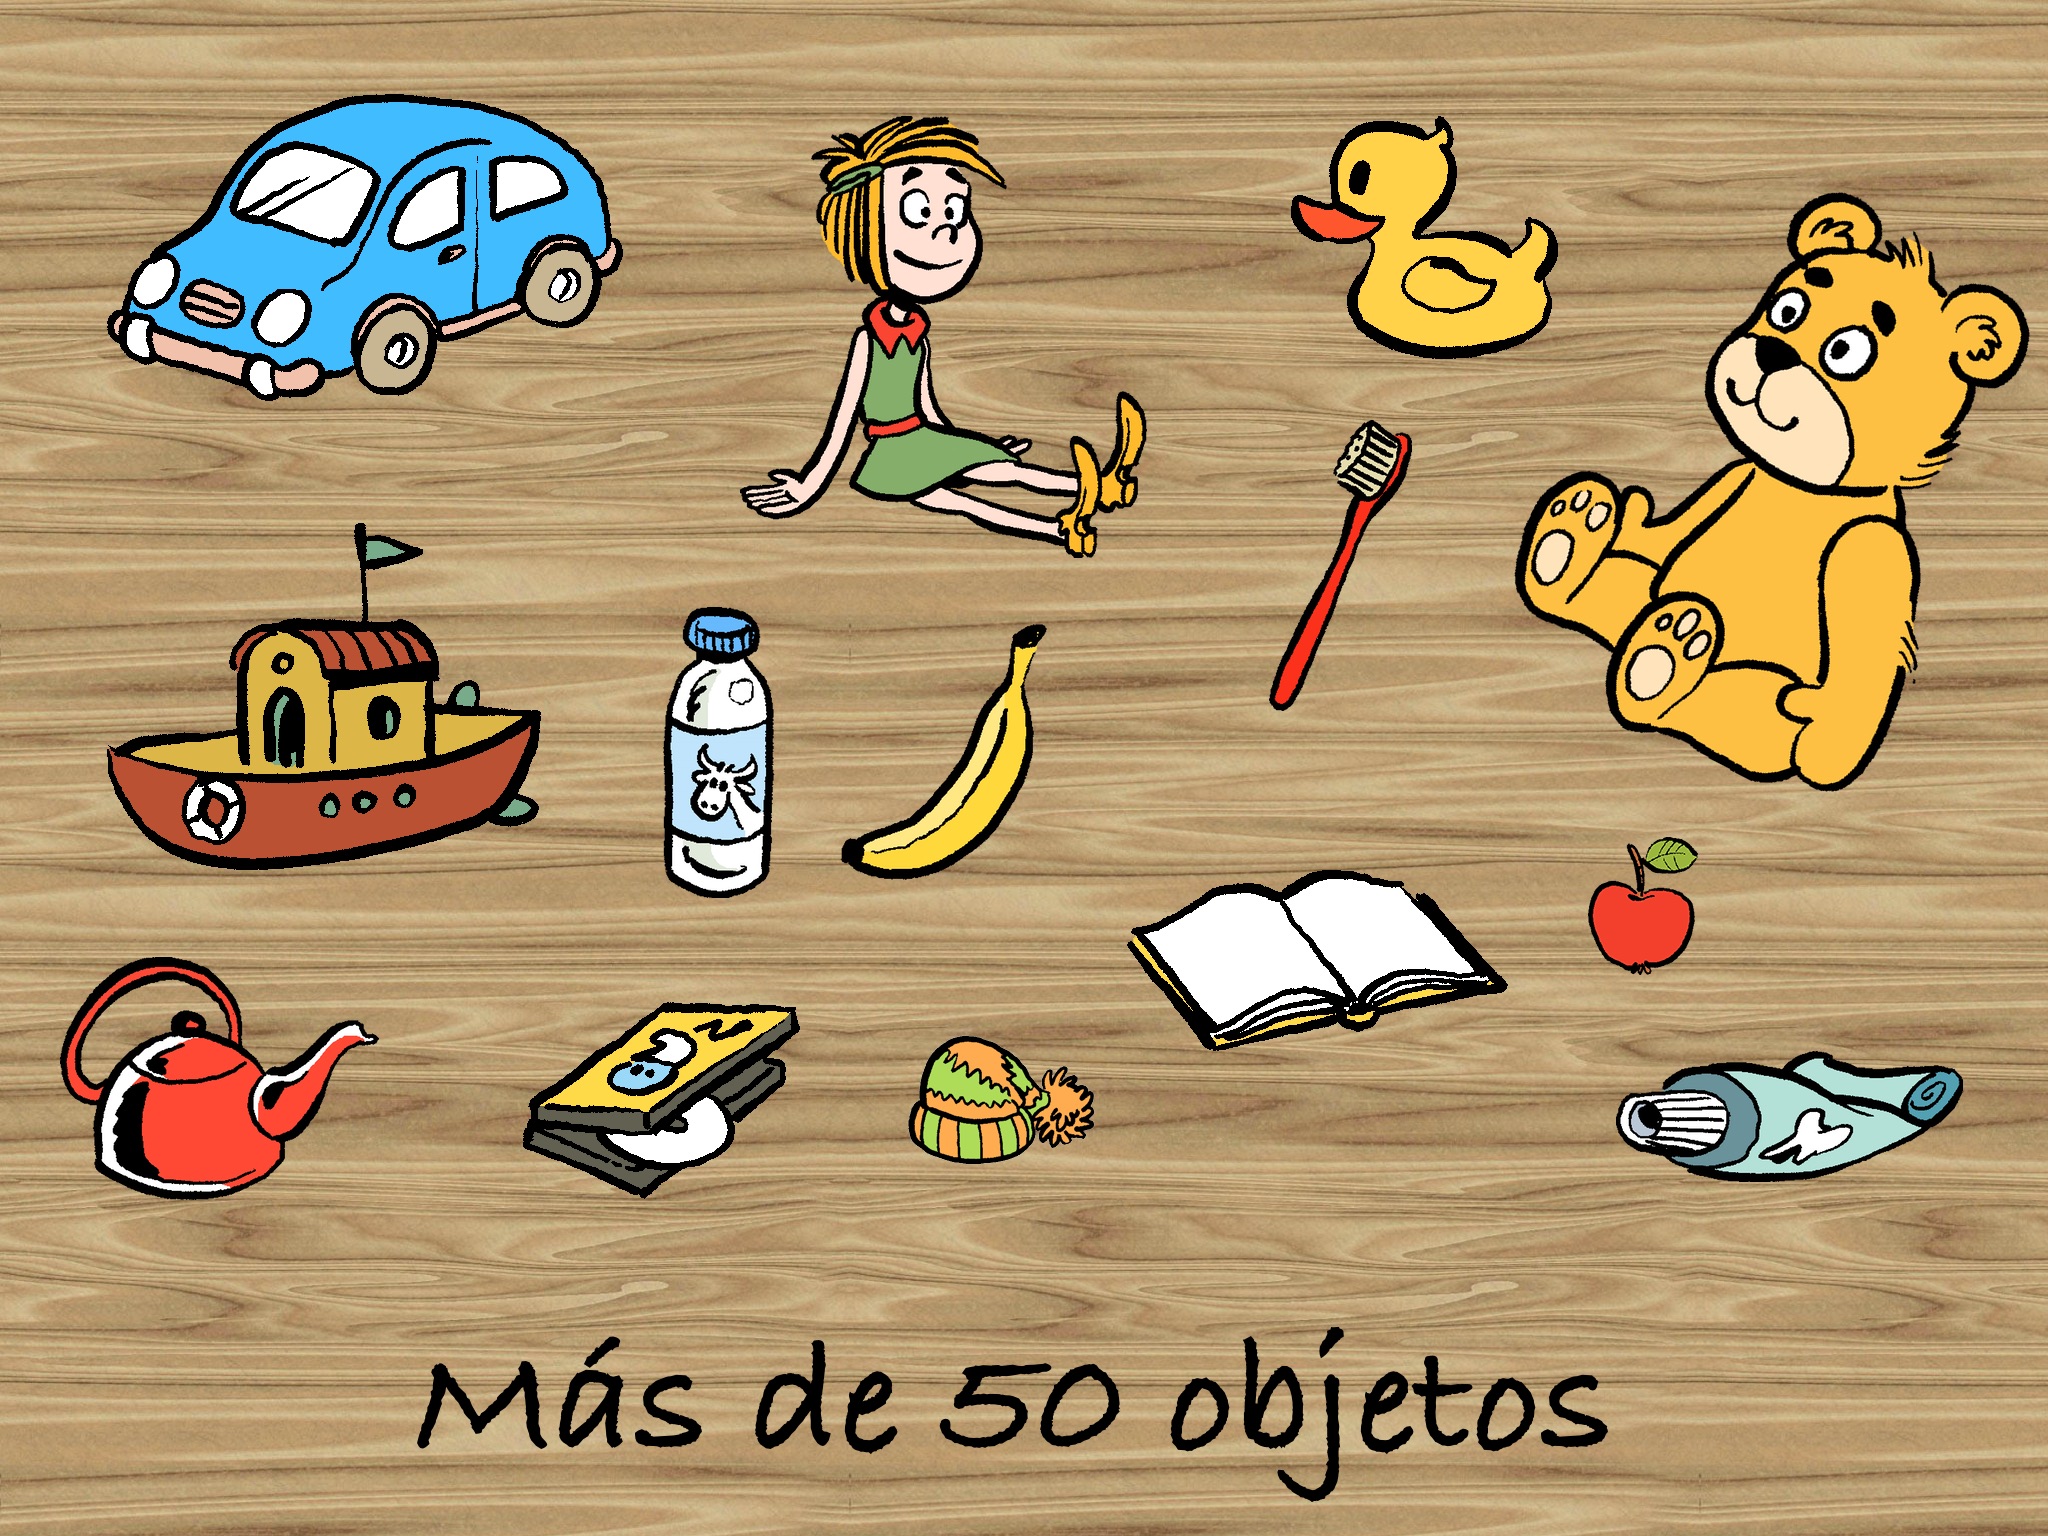 Pedro limpia la casa - un juego para niño pequeňos - español screenshot 4